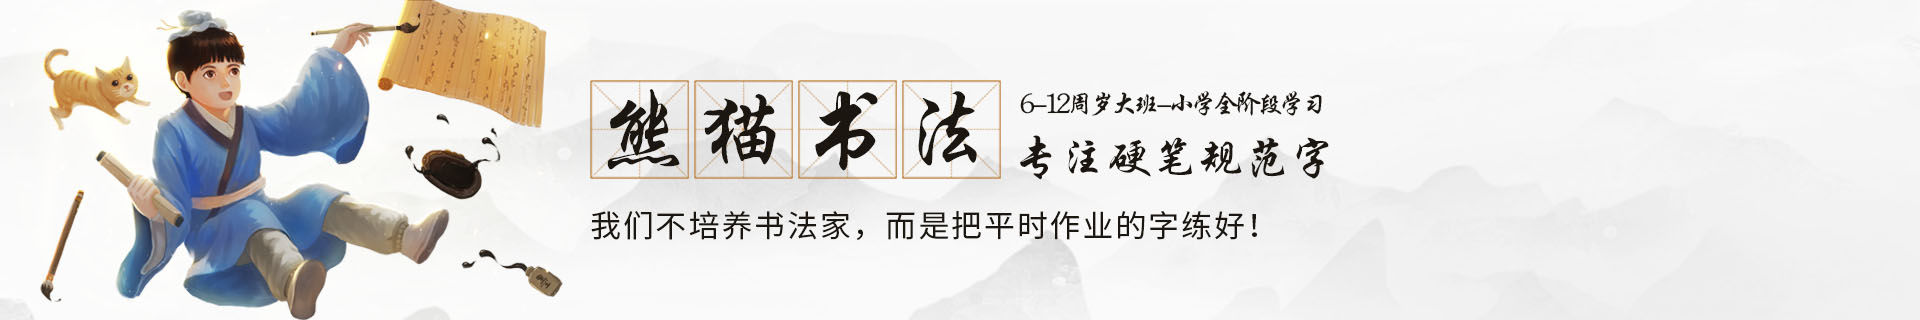 杭州熊猫书法培训